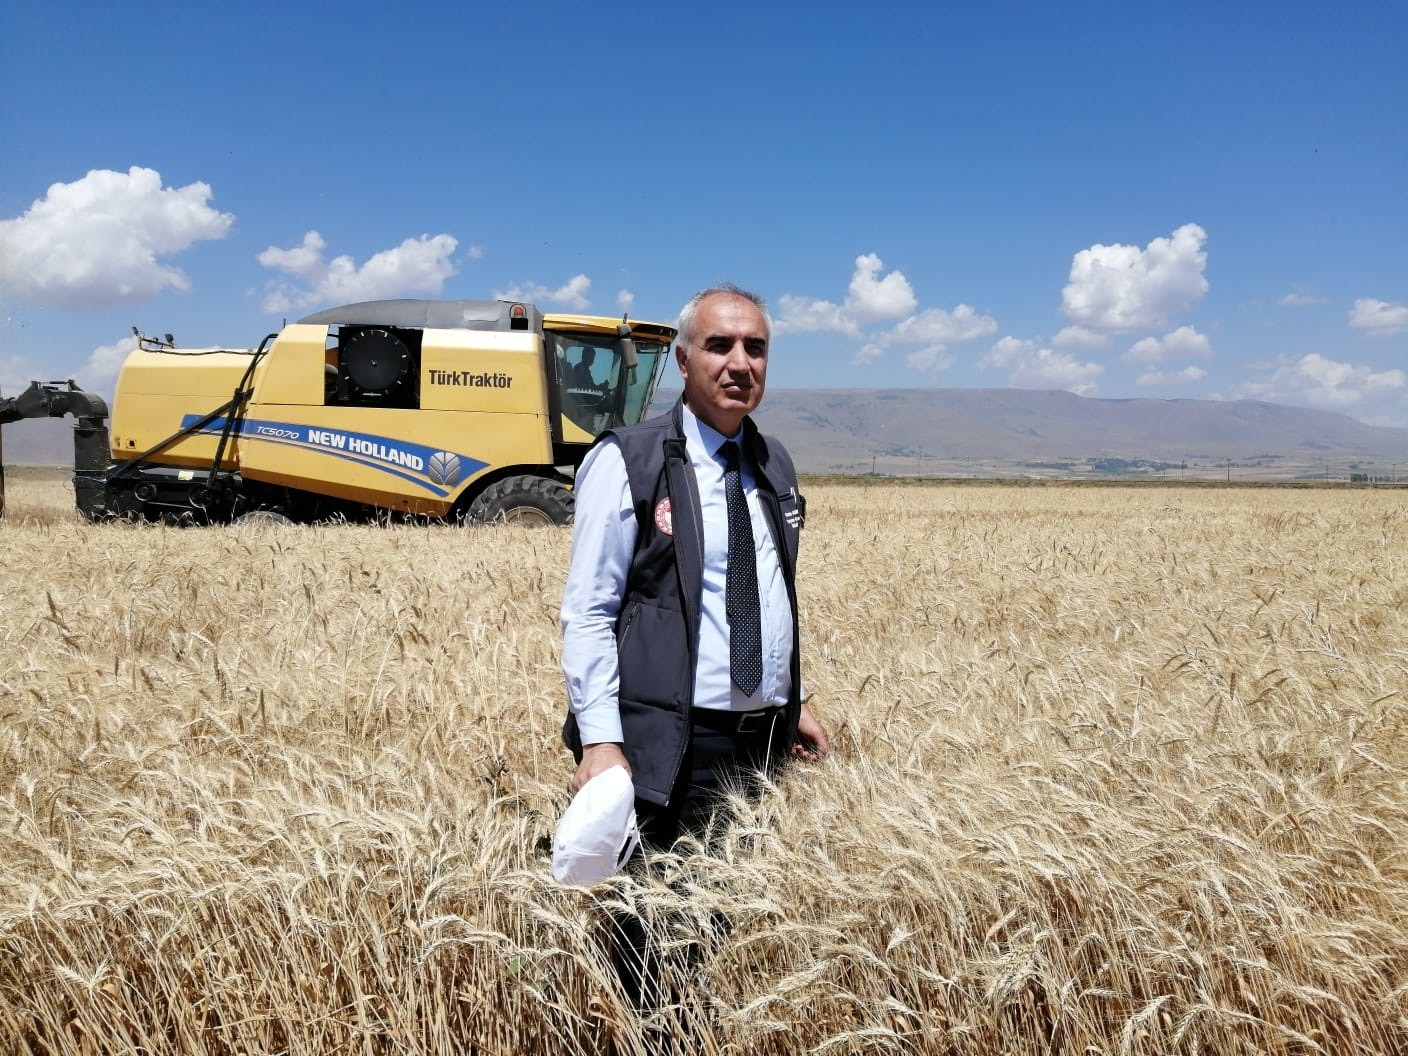 Erzurum’da buğday yüzde yüz artış gösteriyor beklenen hasat yaklaşık 300 bin ton